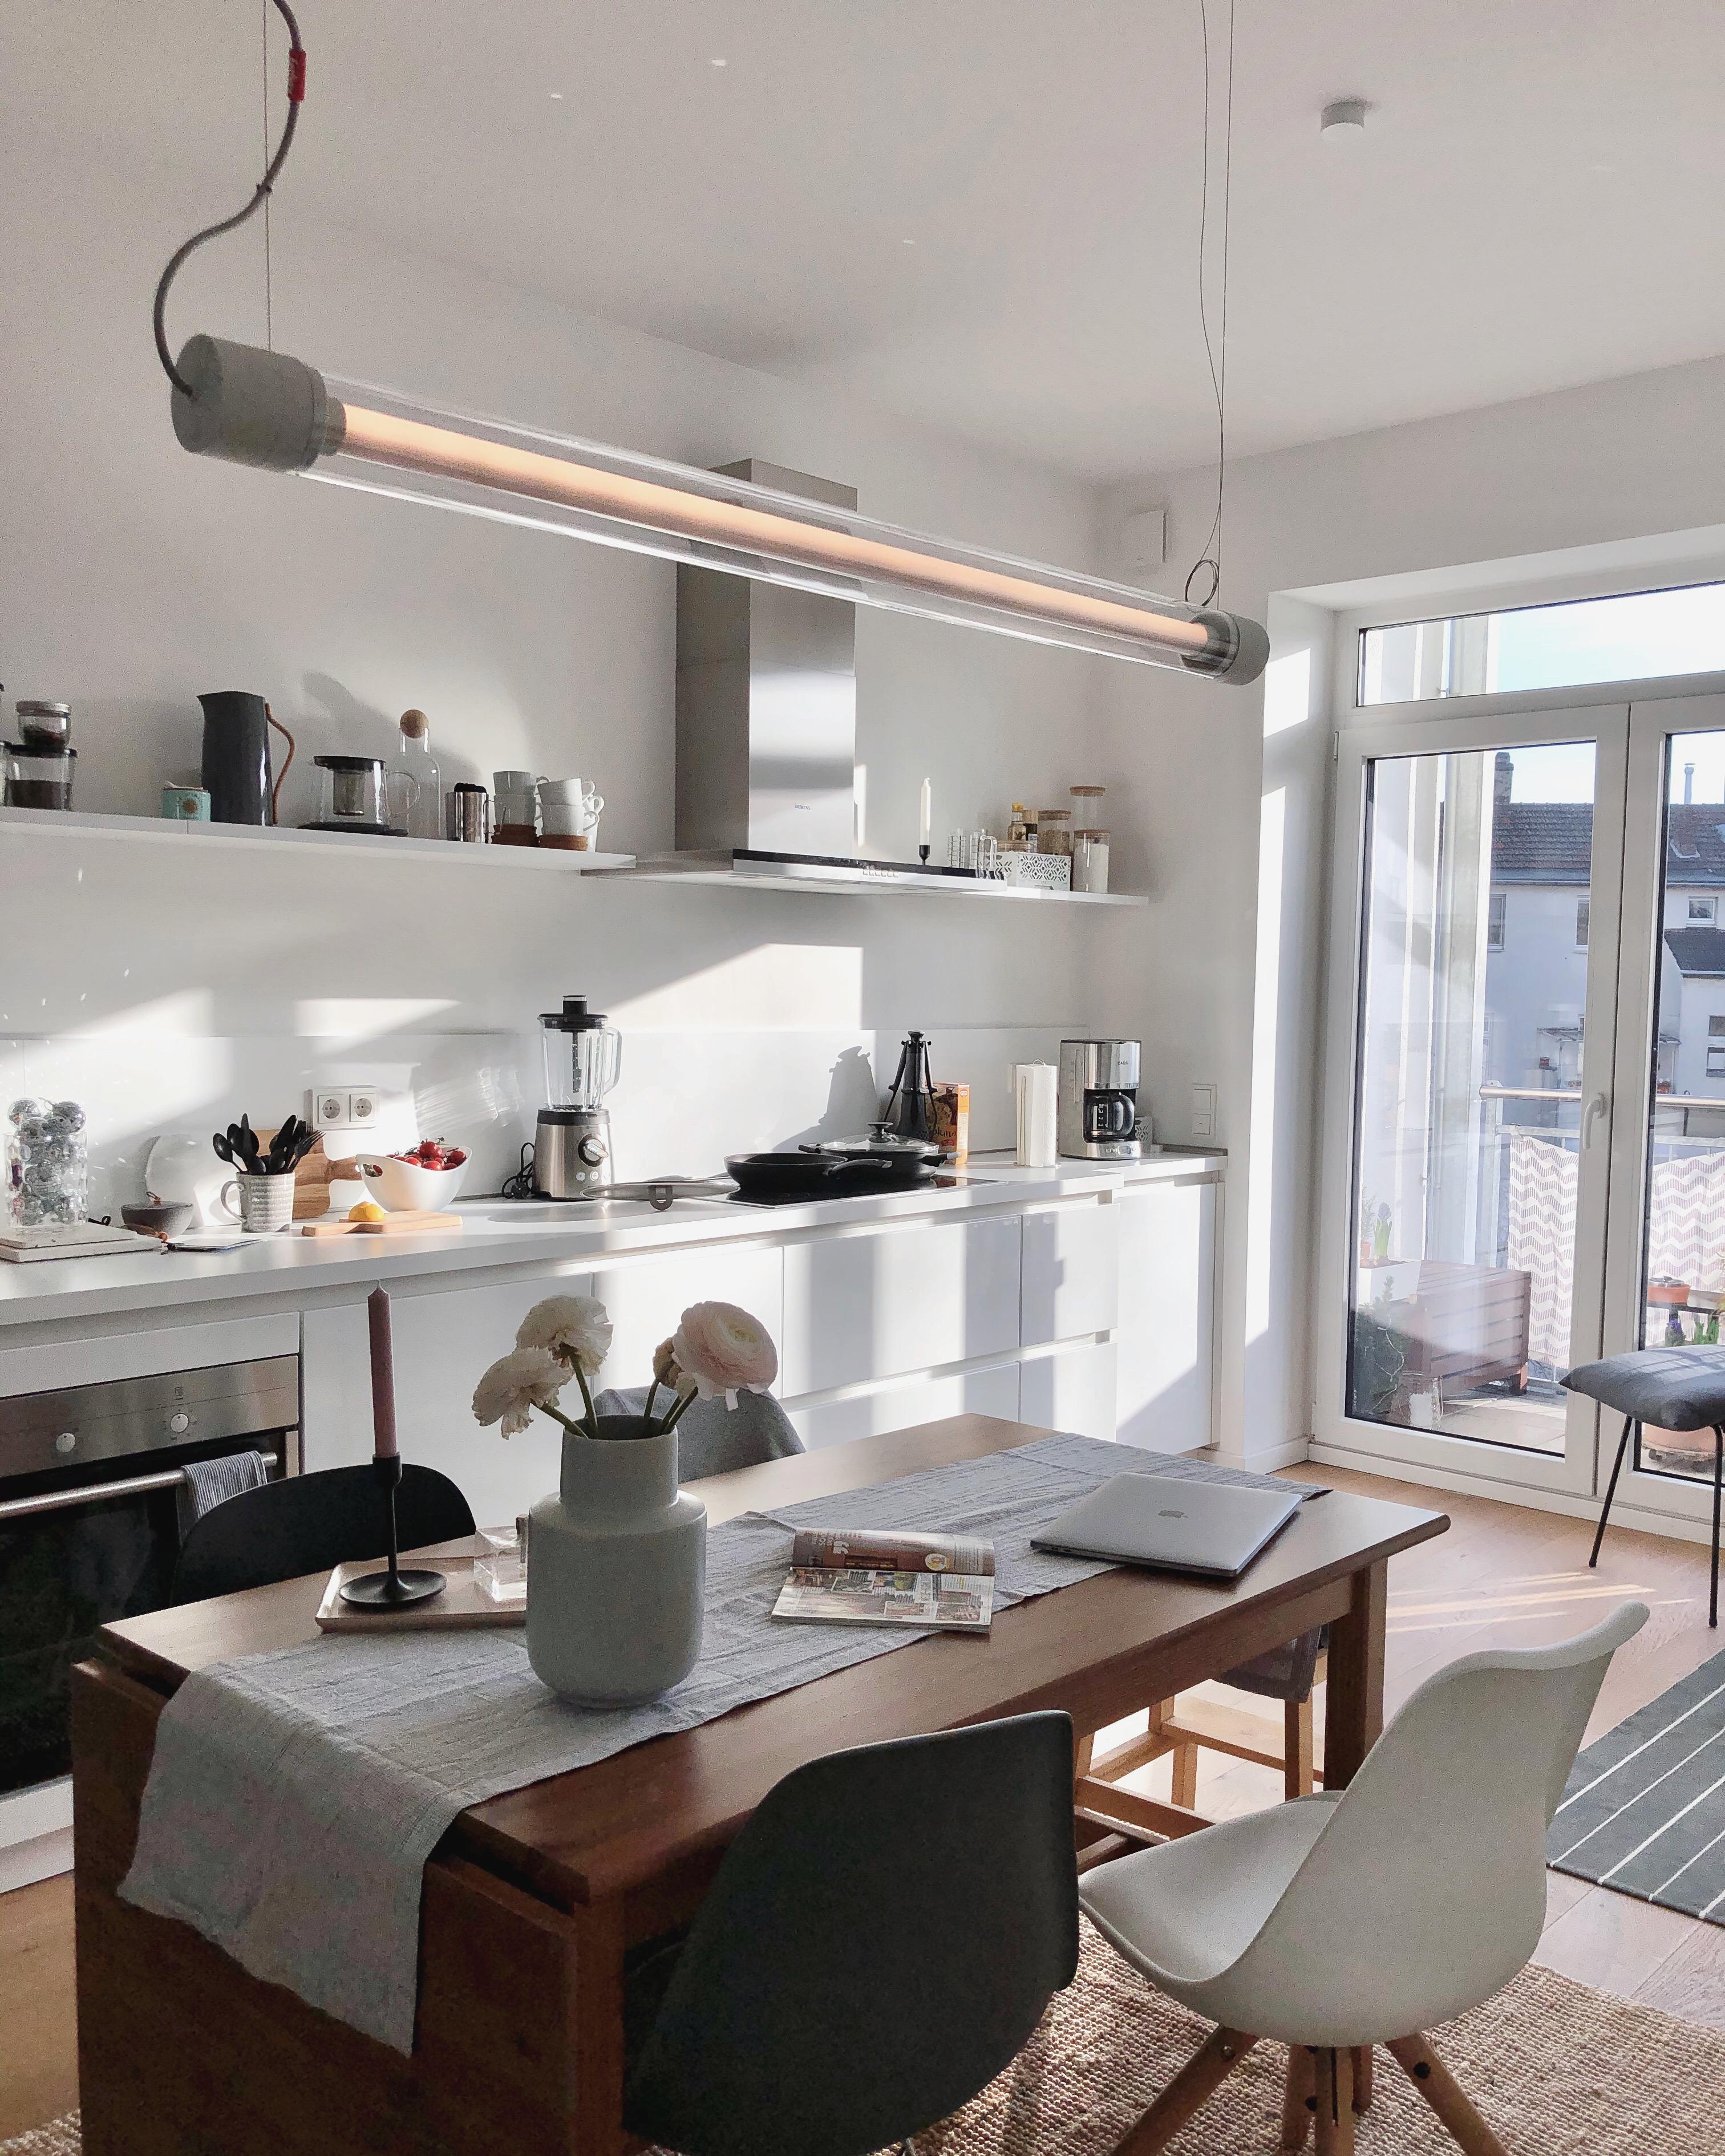 up in space 🚀 
habt ein schönes wochenende! 
#kitchen #kitchenstyle #küche #interior #couchstyle 